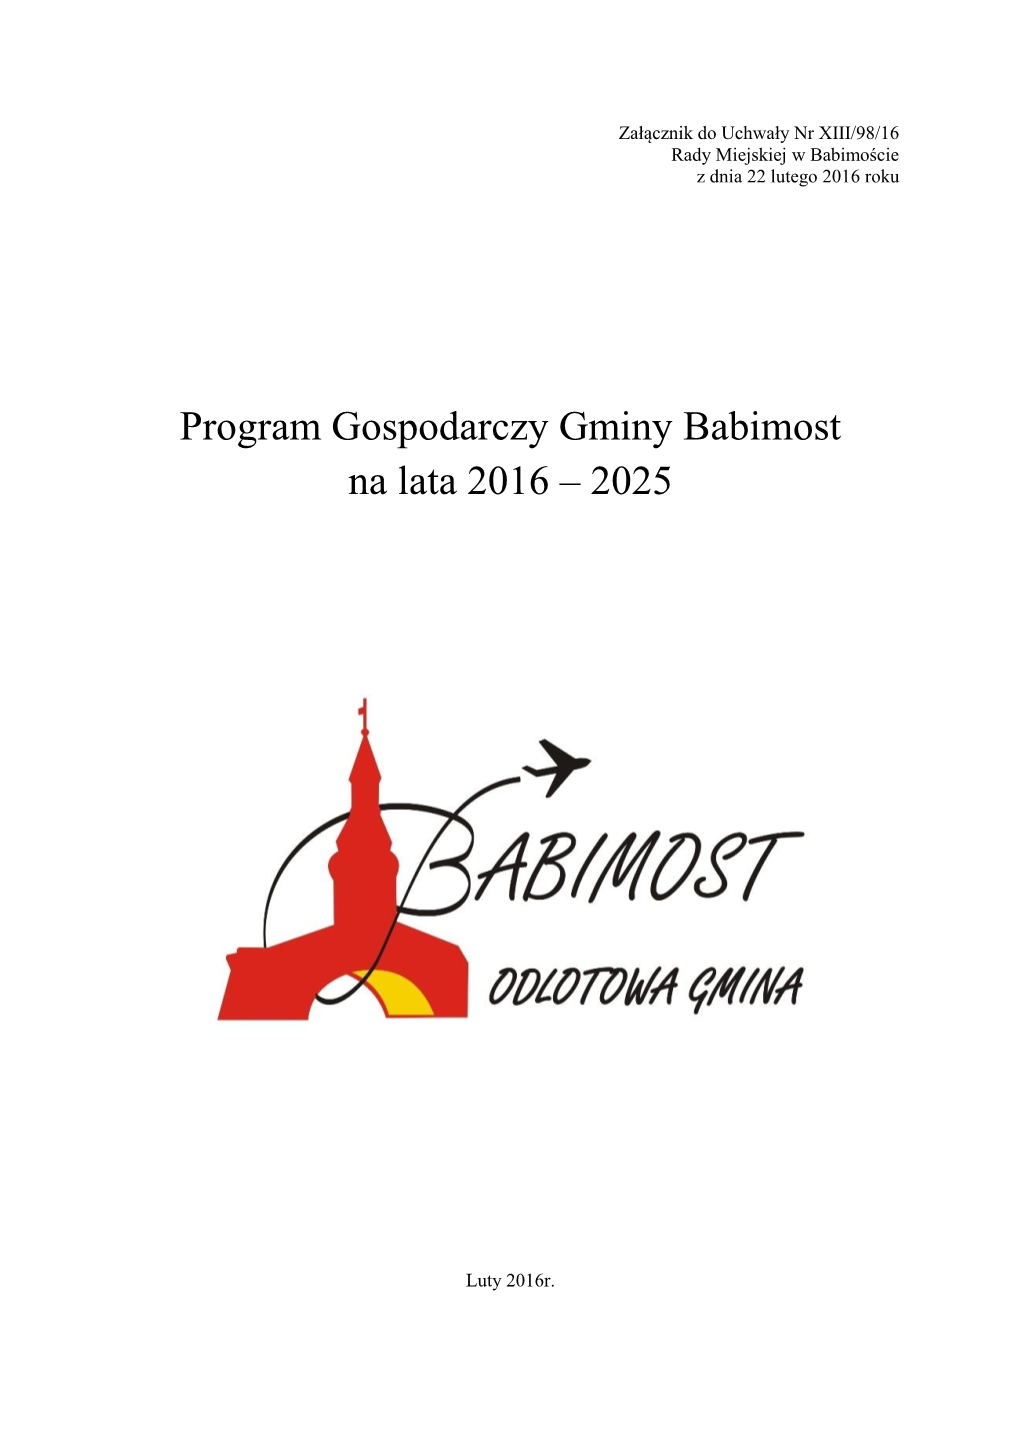 Program Gospodarczy Gminy Babimost Na Lata 2016 – 2025